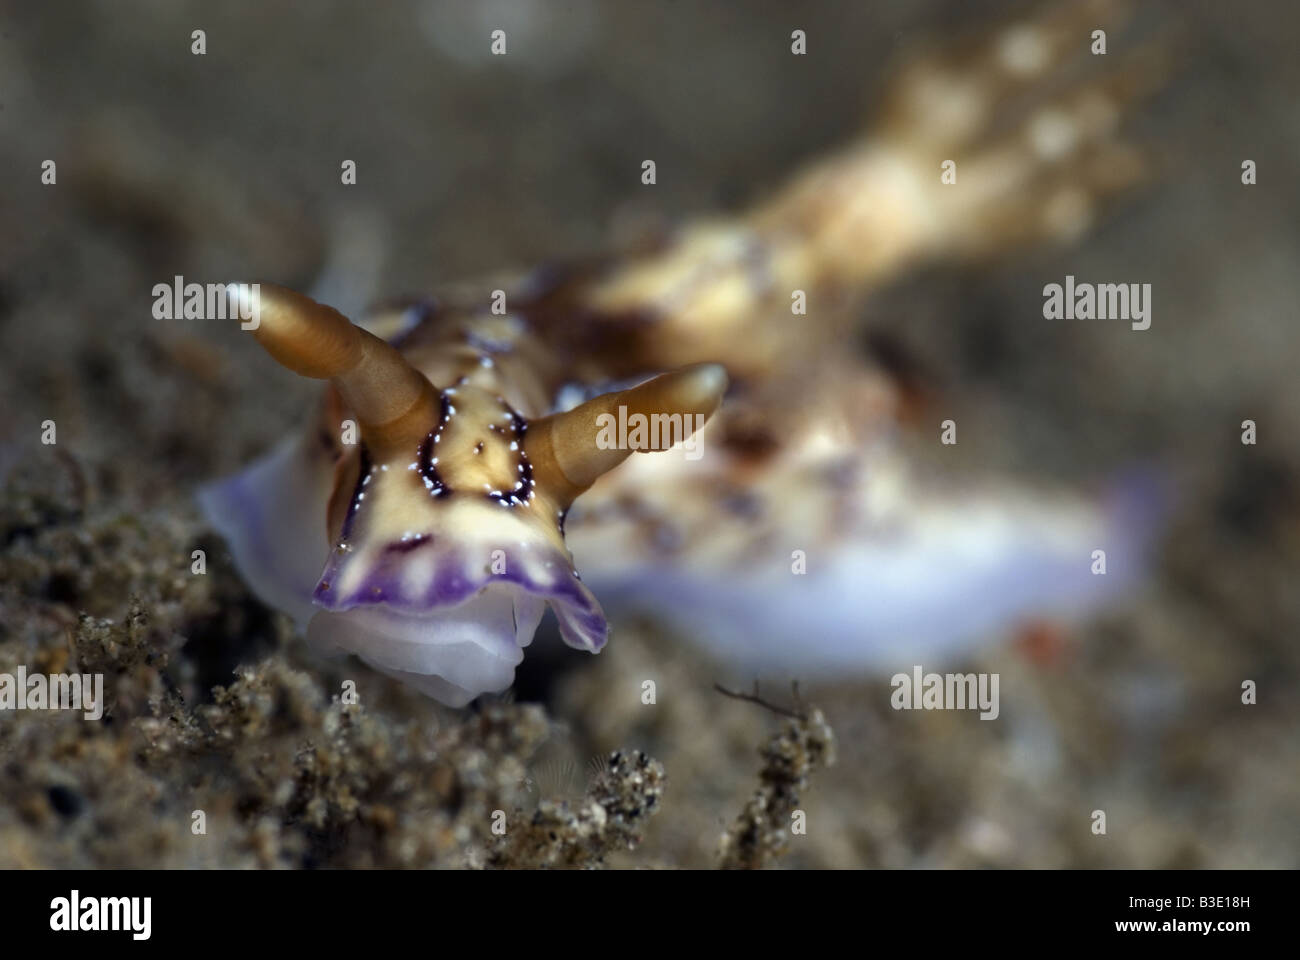 Nudibranche bianco crema con contrassegni colorati sul suo corpo e contrassegni di colore viola sui bordi sotto l'acqua Foto Stock